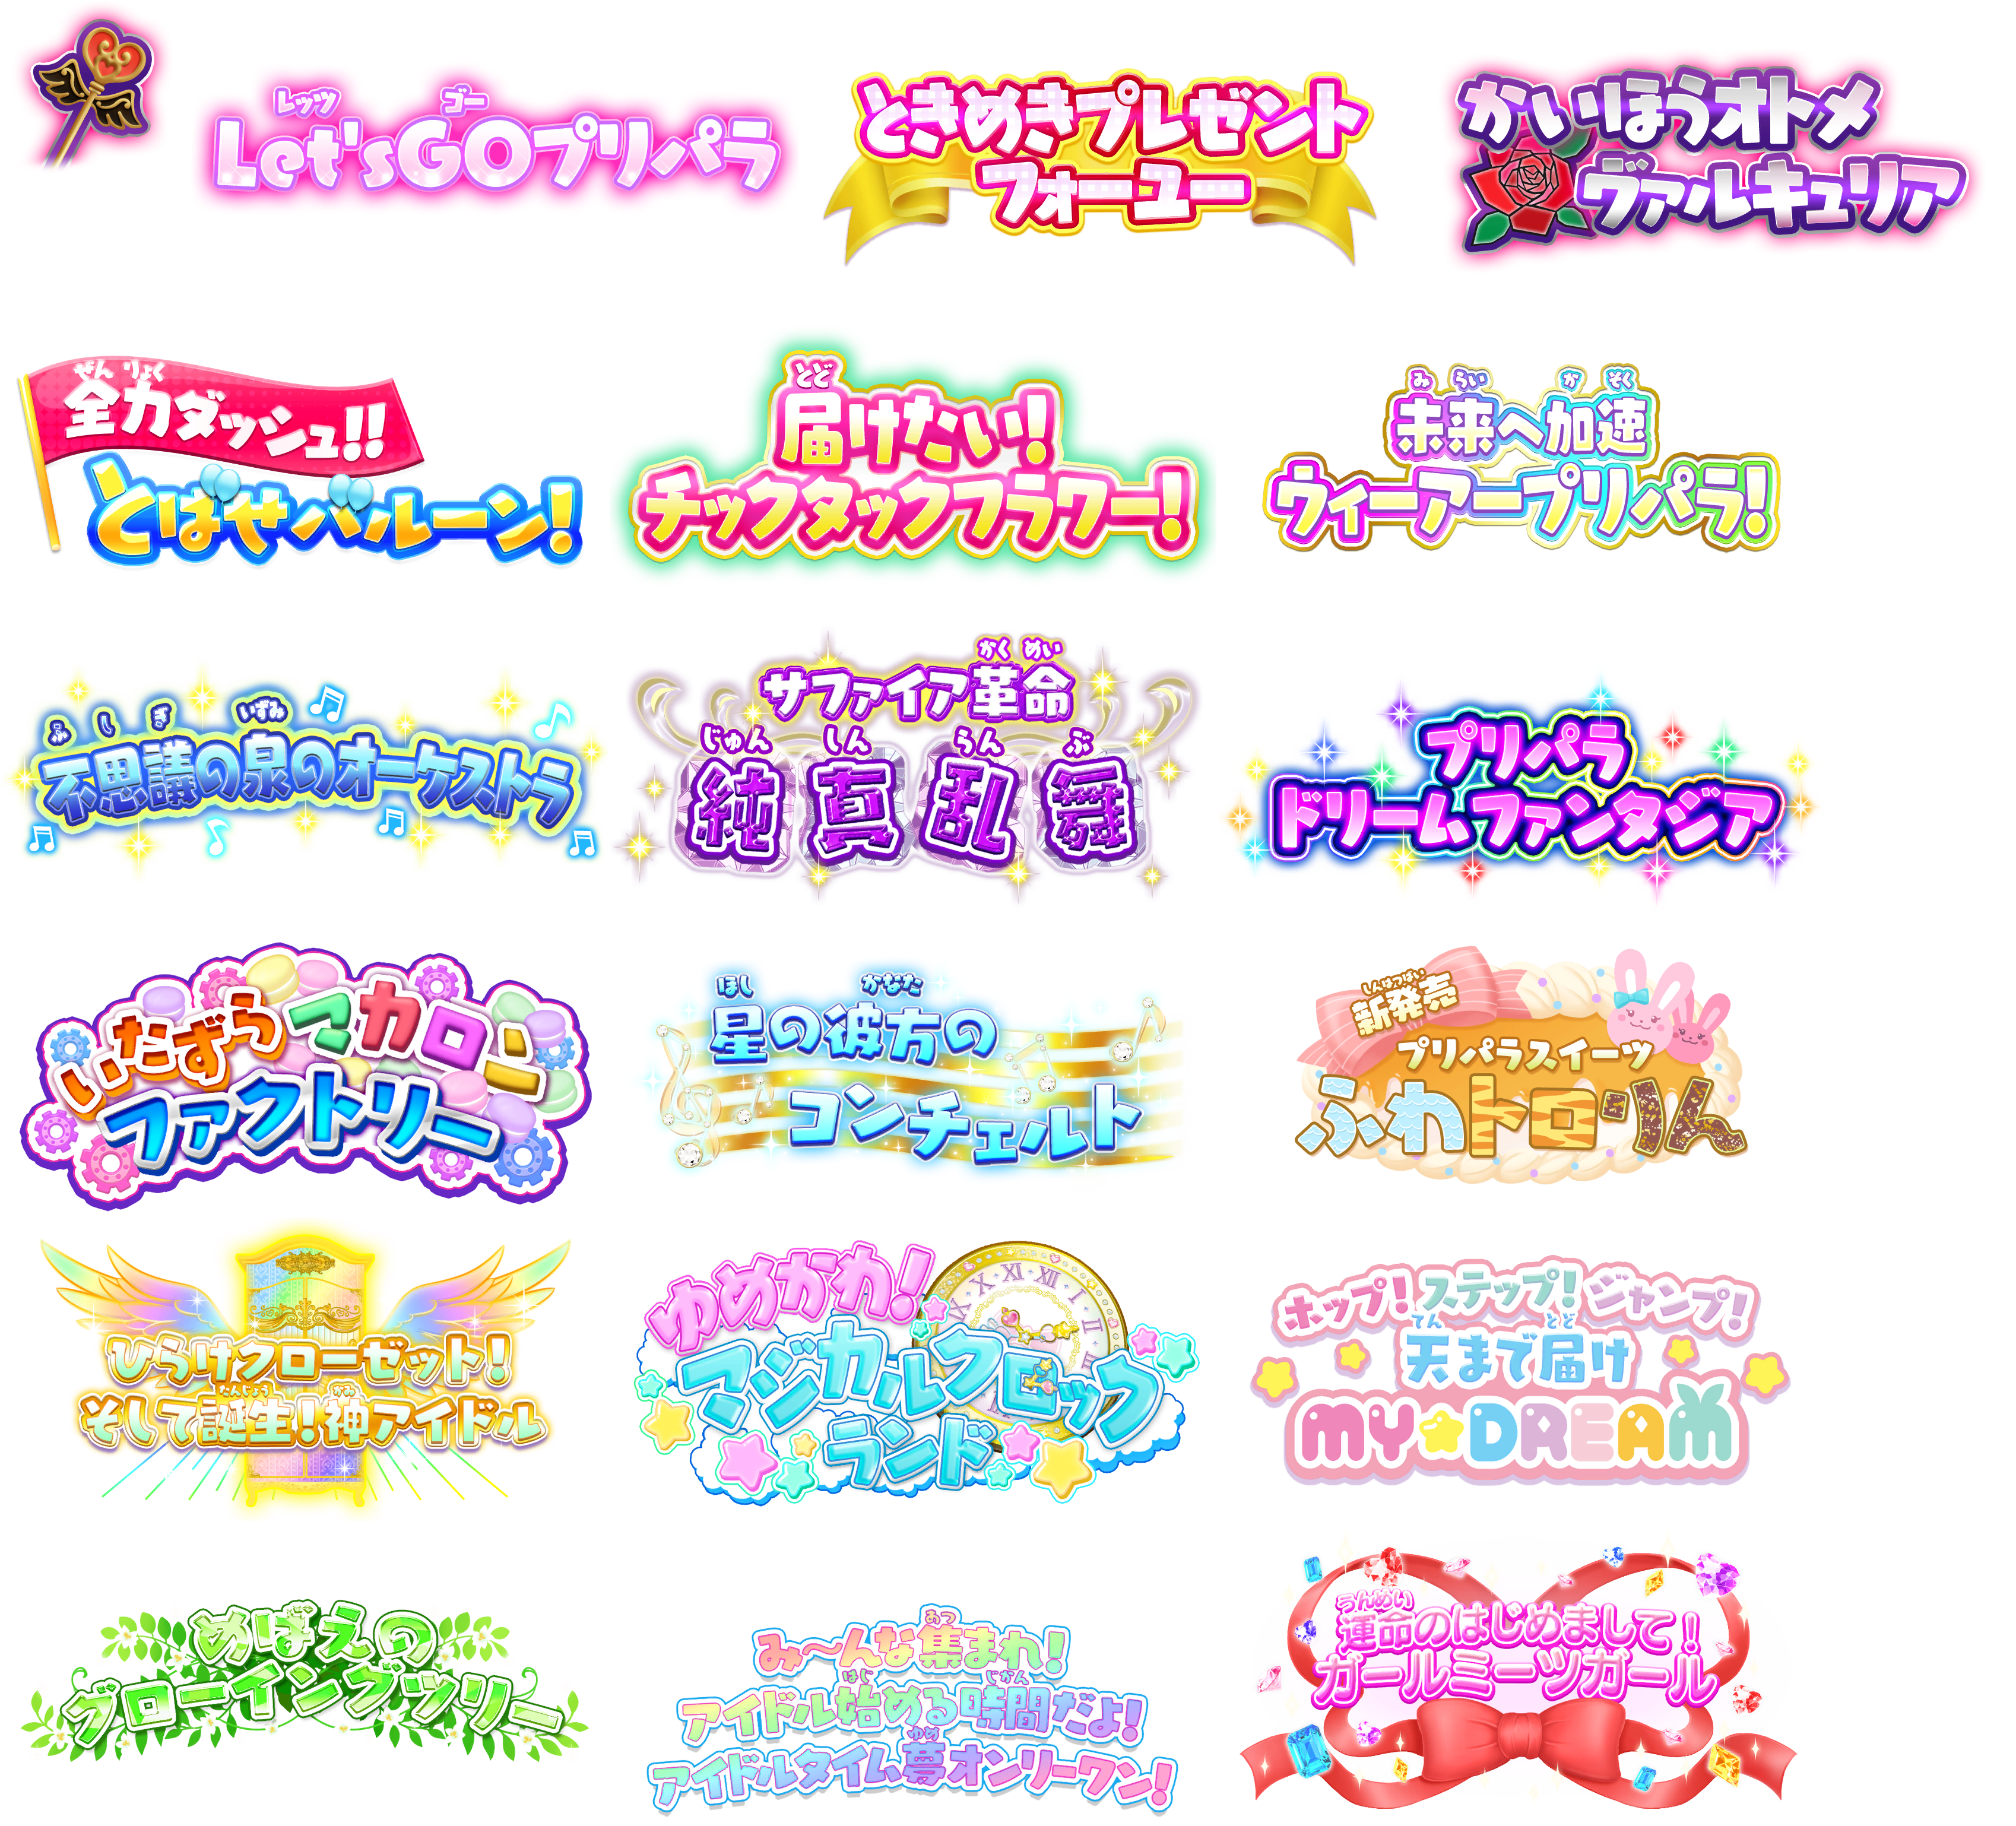 PriPara: All Idol Perfect Stage! (JPN) - Making Drama Logos